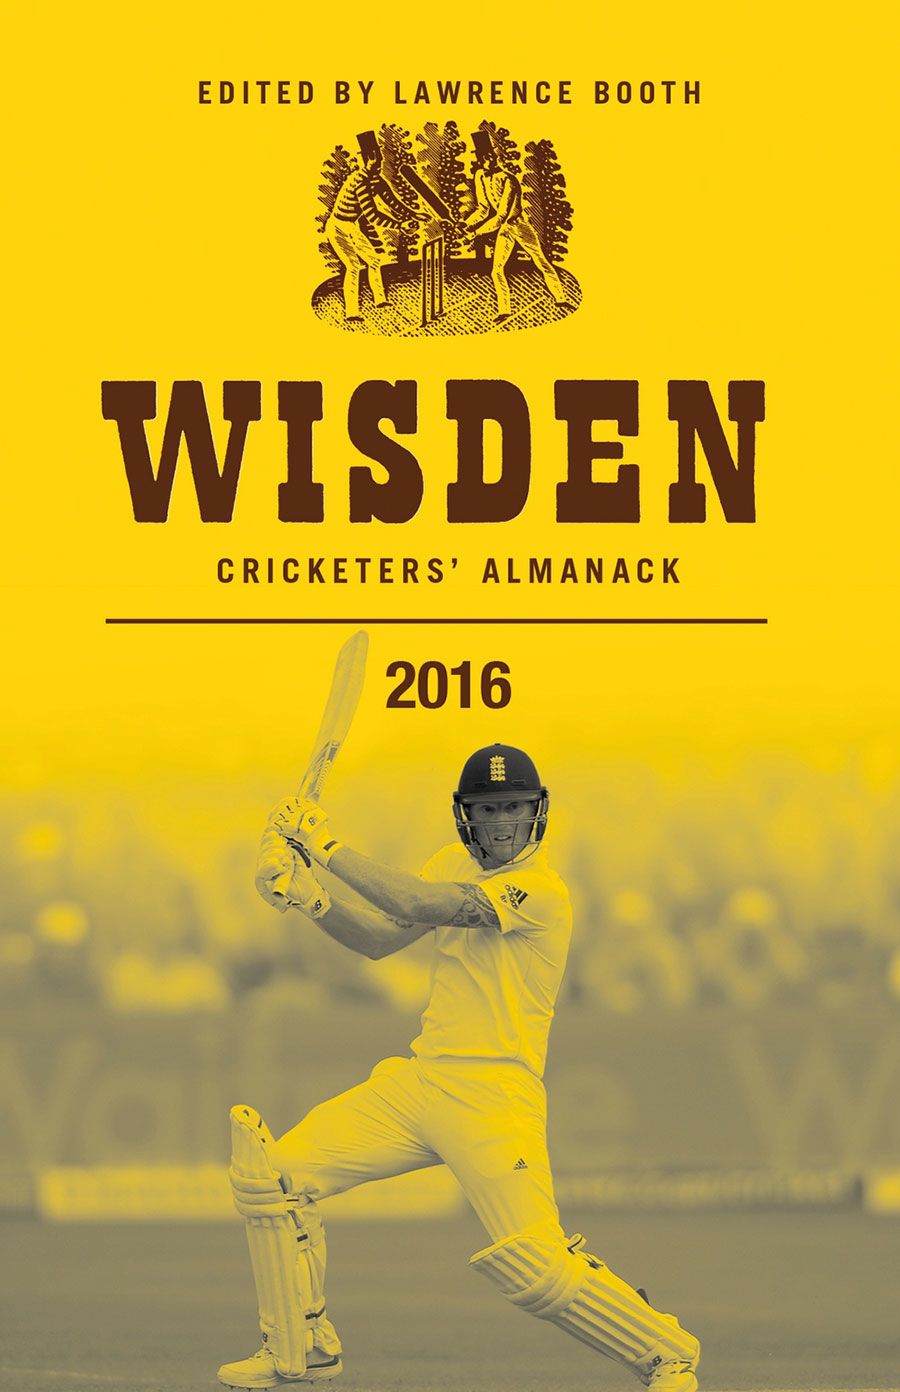 The 2016 Wisden Cricketers' Almanack